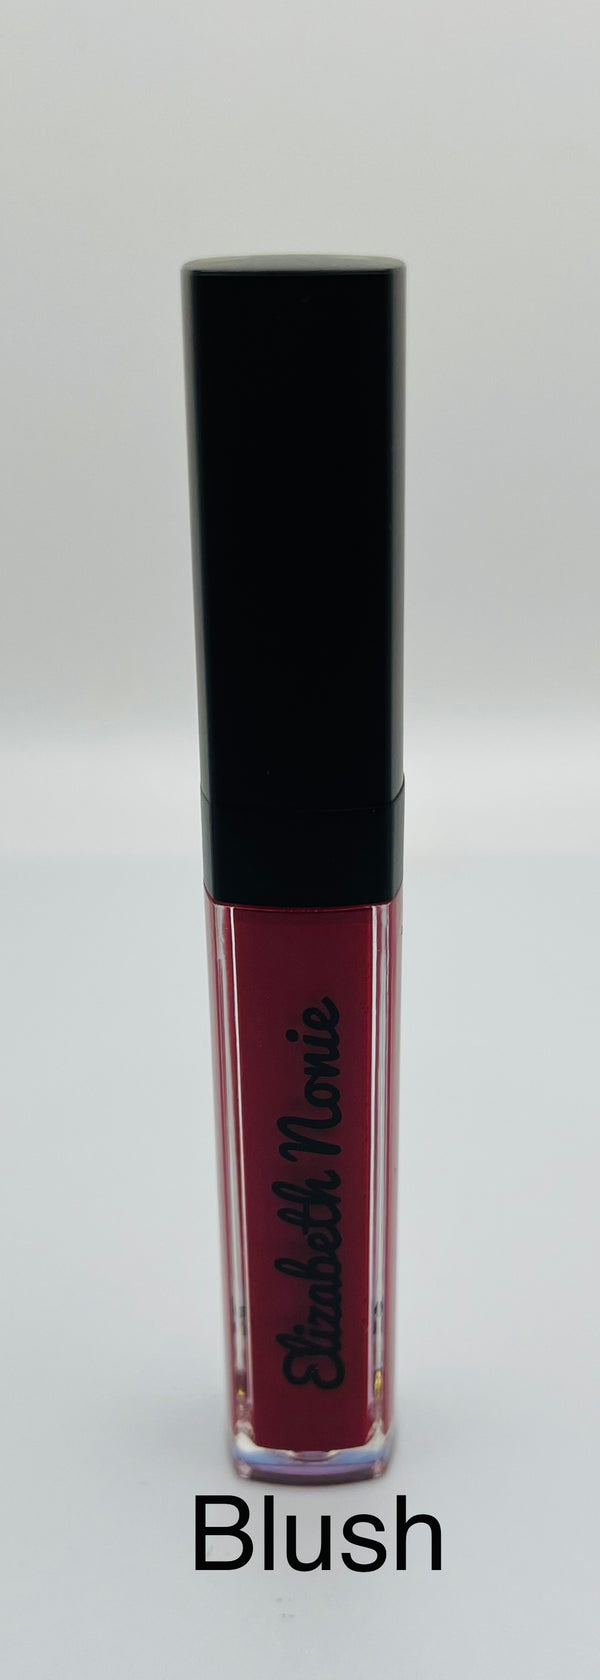 Blush Matte Liquid Lipstick